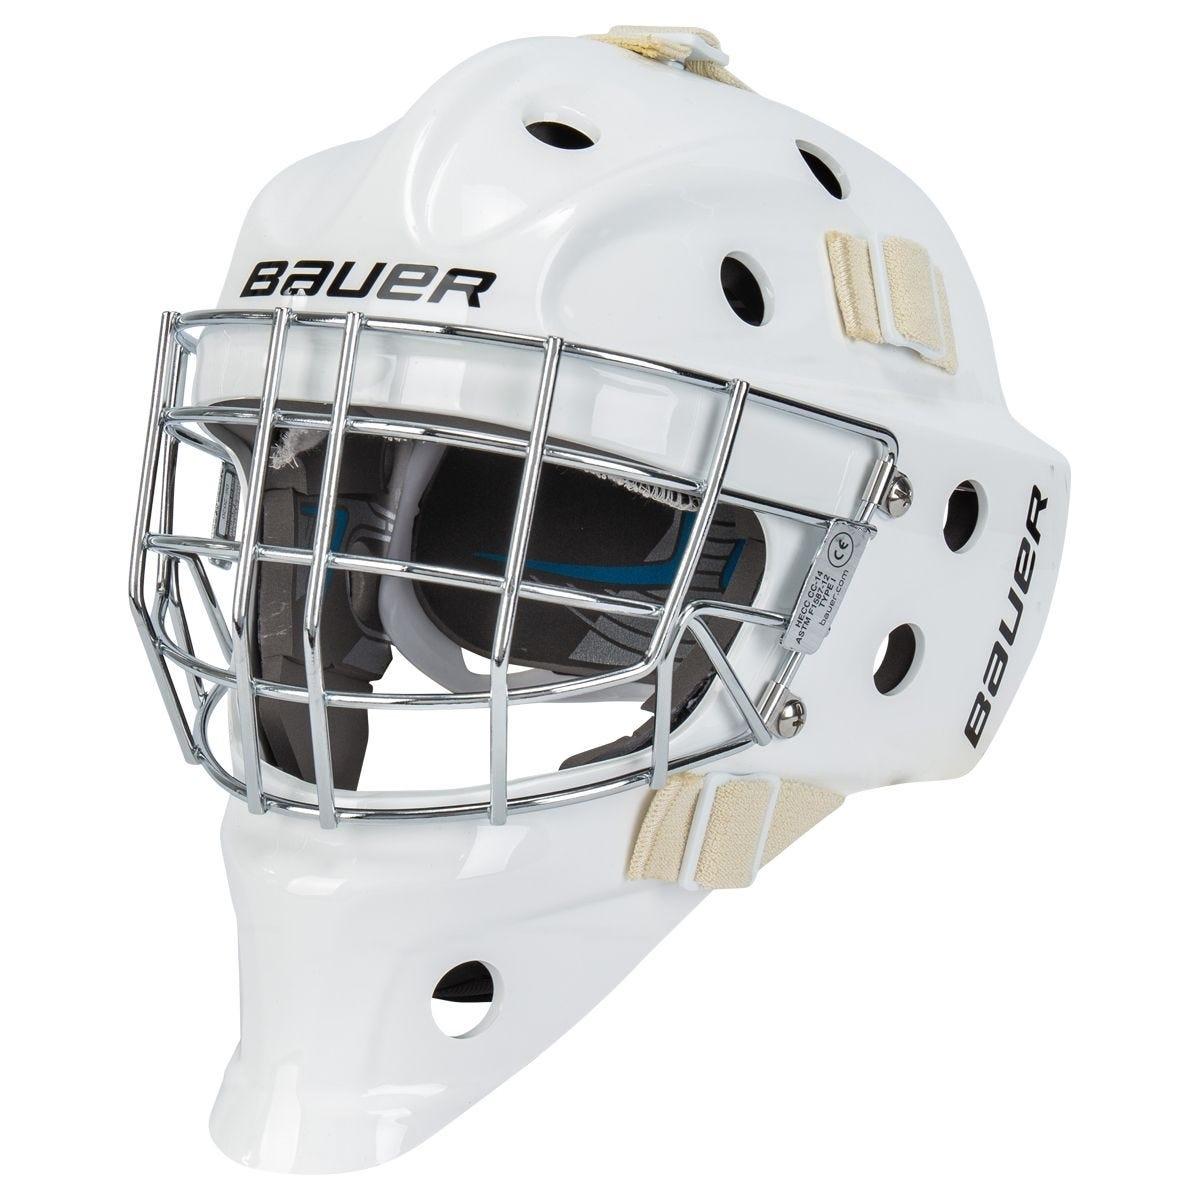 Bauer 930 Jr. Certified Goalie Maskproduct zoom image #1